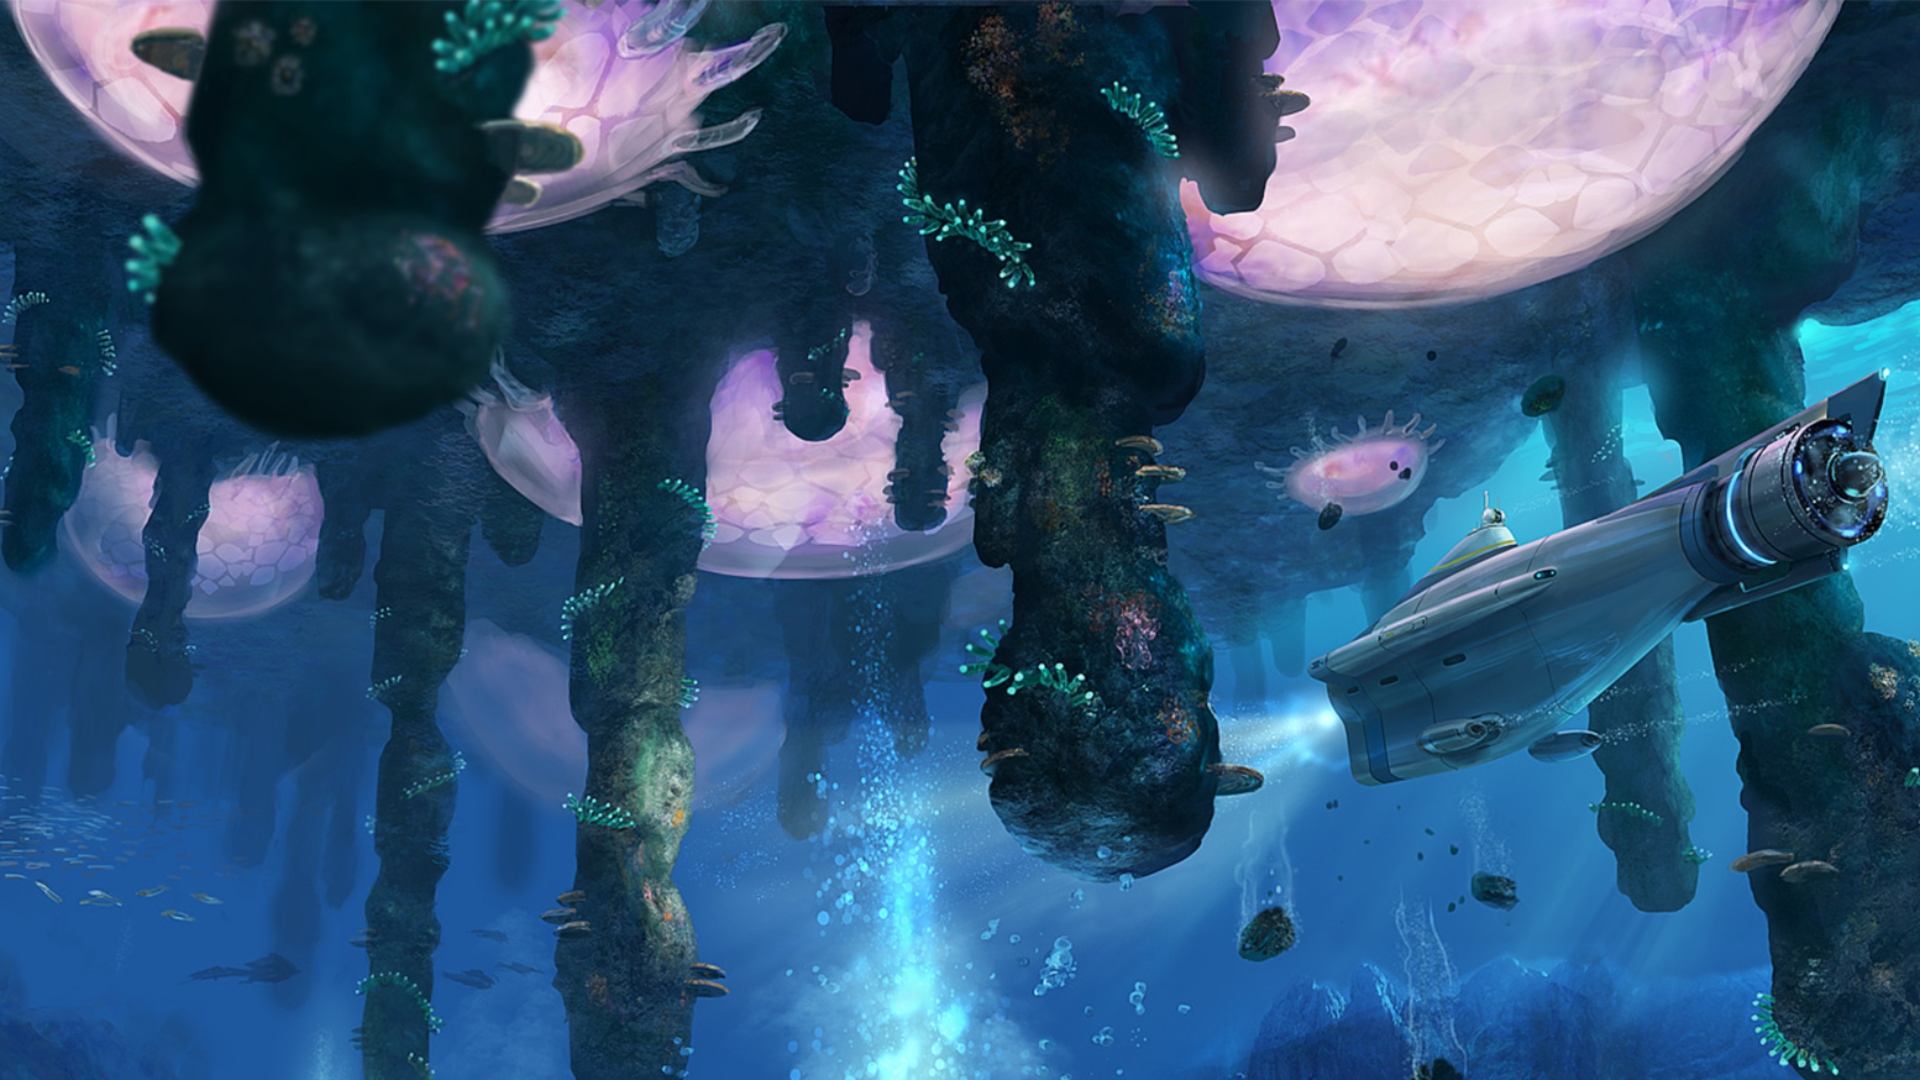 بقا کے بہترین کھیل: پانی کے اندر اندر ایک سب میرین گلائڈنگ کے ساتھ دیکھا جاسکتا ہے